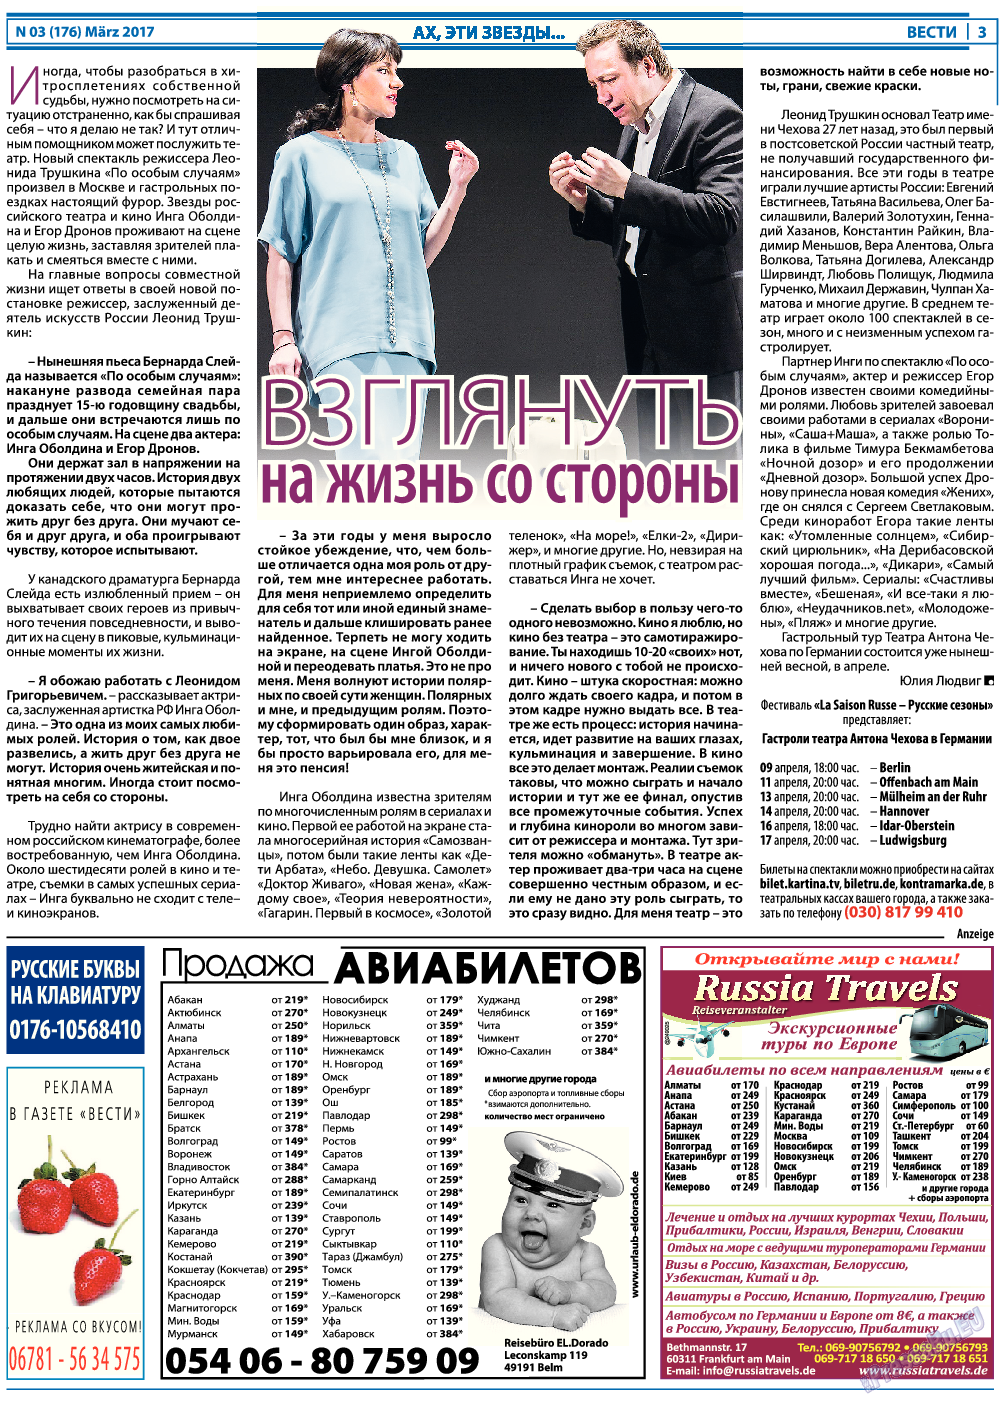 Вести, газета. 2017 №3 стр.3